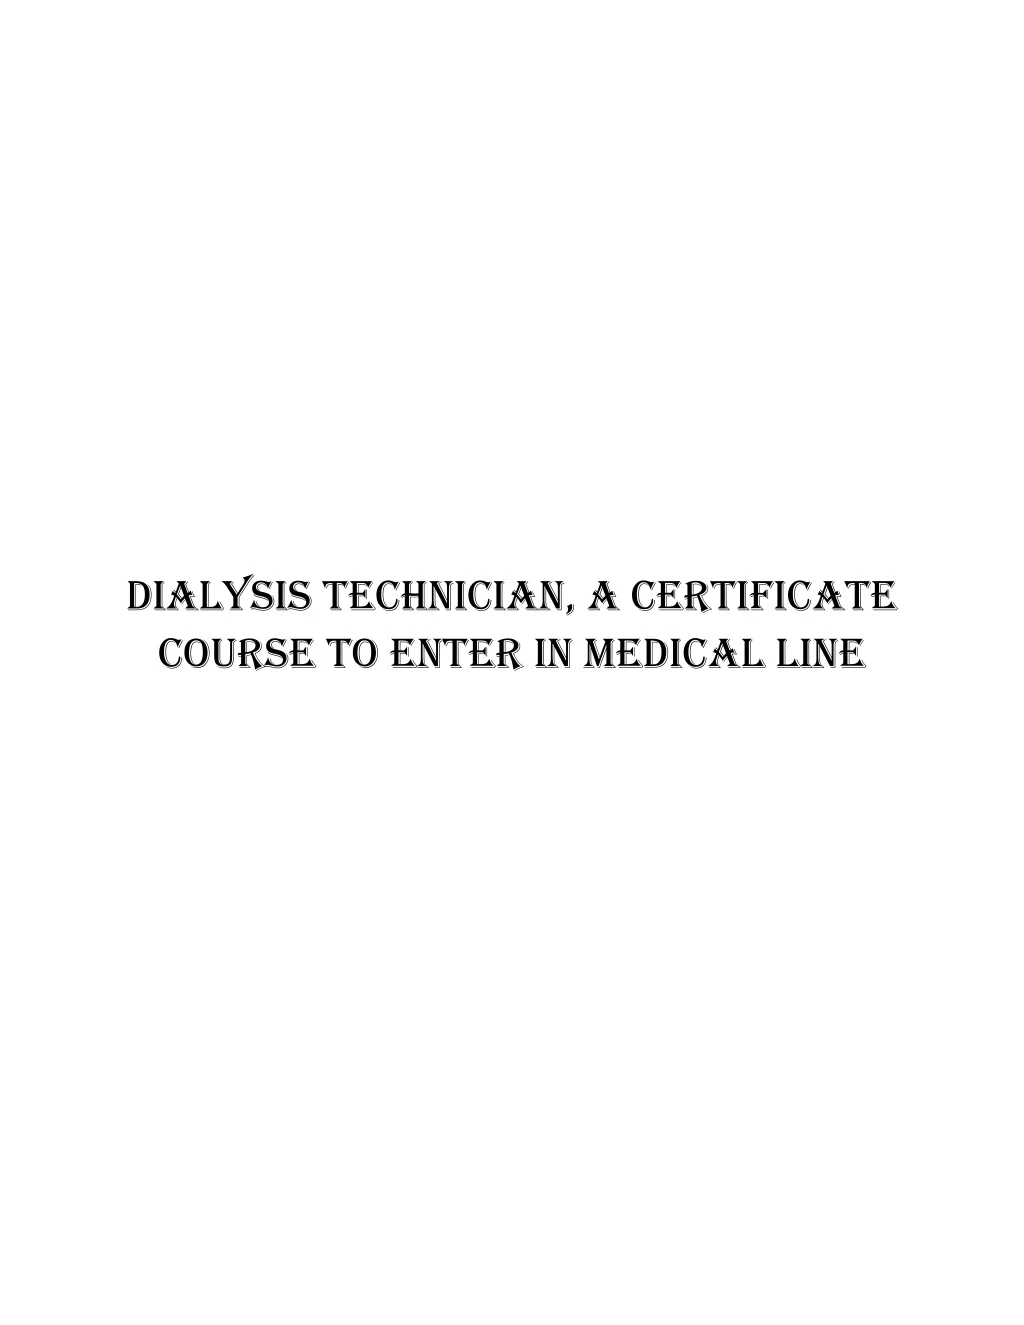 dialysis technician a certificate course to enter